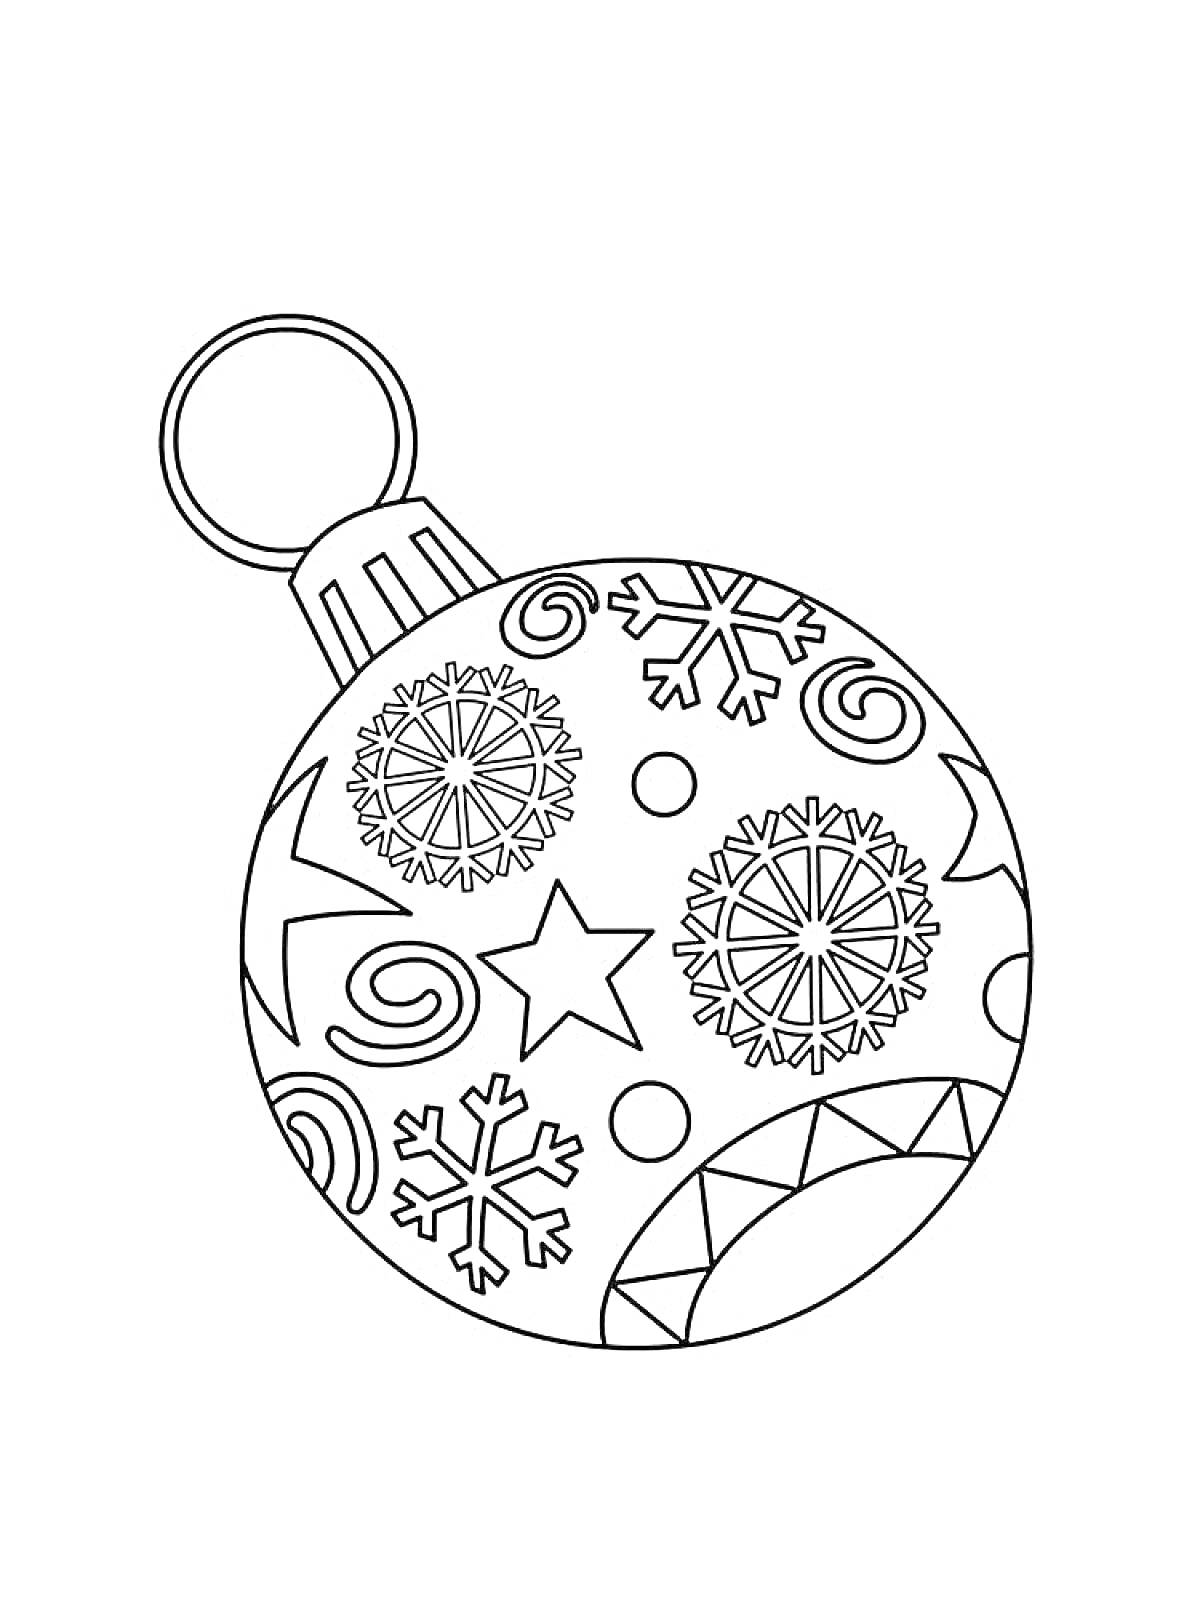 Раскраска елочный шарик с узорами: снежинками, звездами, спиралями и полосками